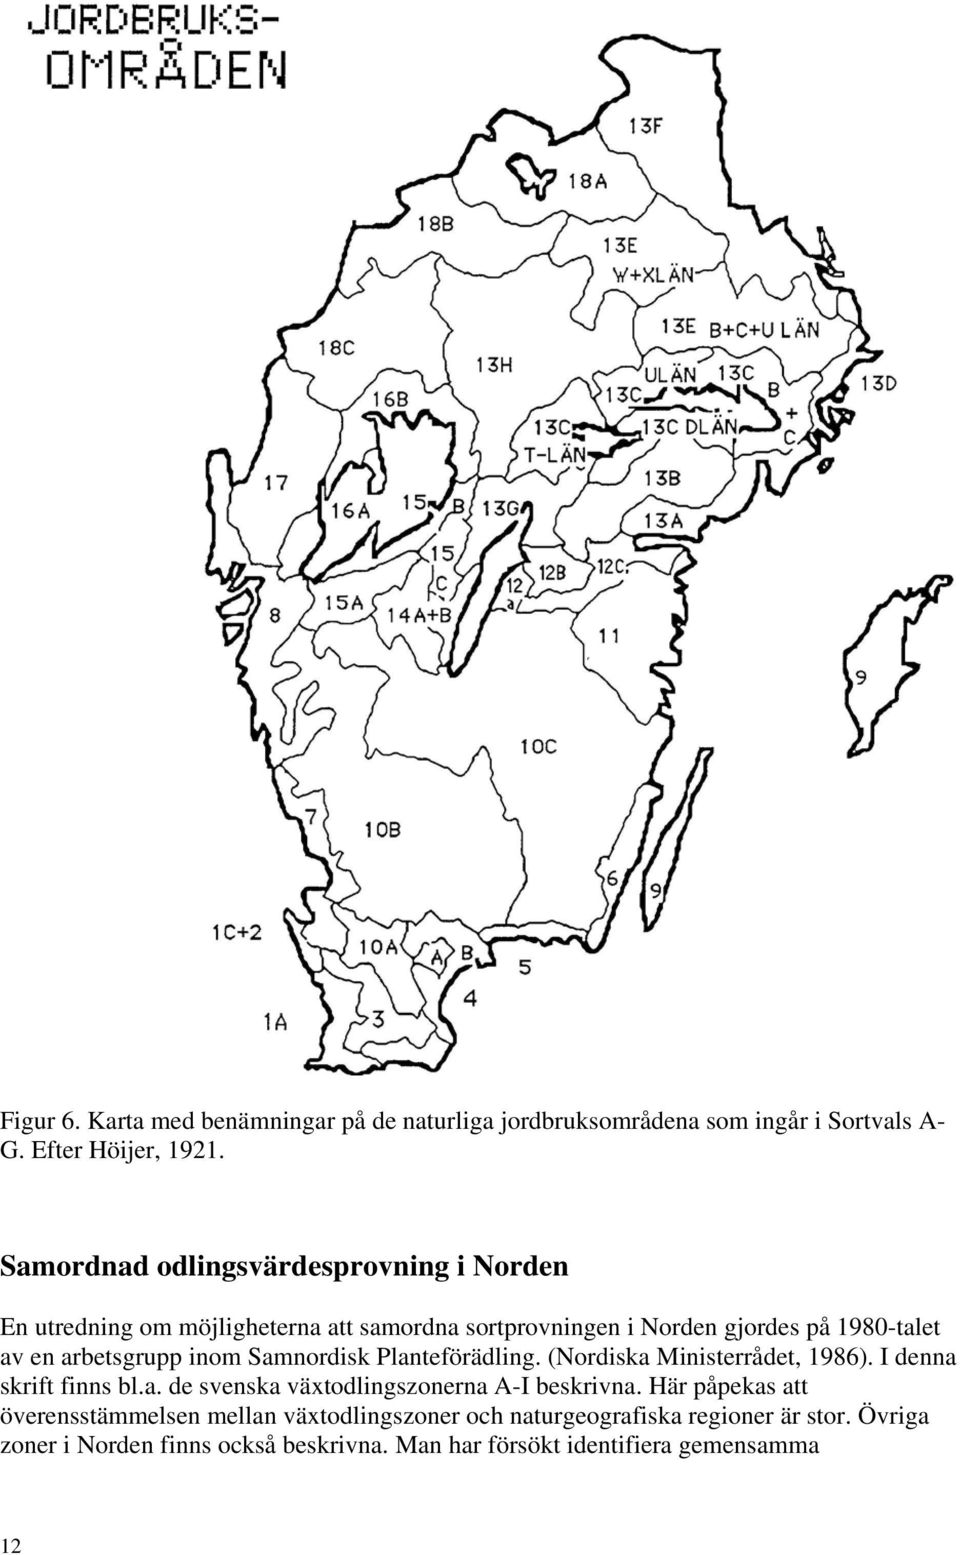 arbetsgrupp inom Samnordisk Planteförädling. (Nordiska Ministerrådet, 1986). I denna skrift finns bl.a. de svenska växtodlingszonerna A-I beskrivna.